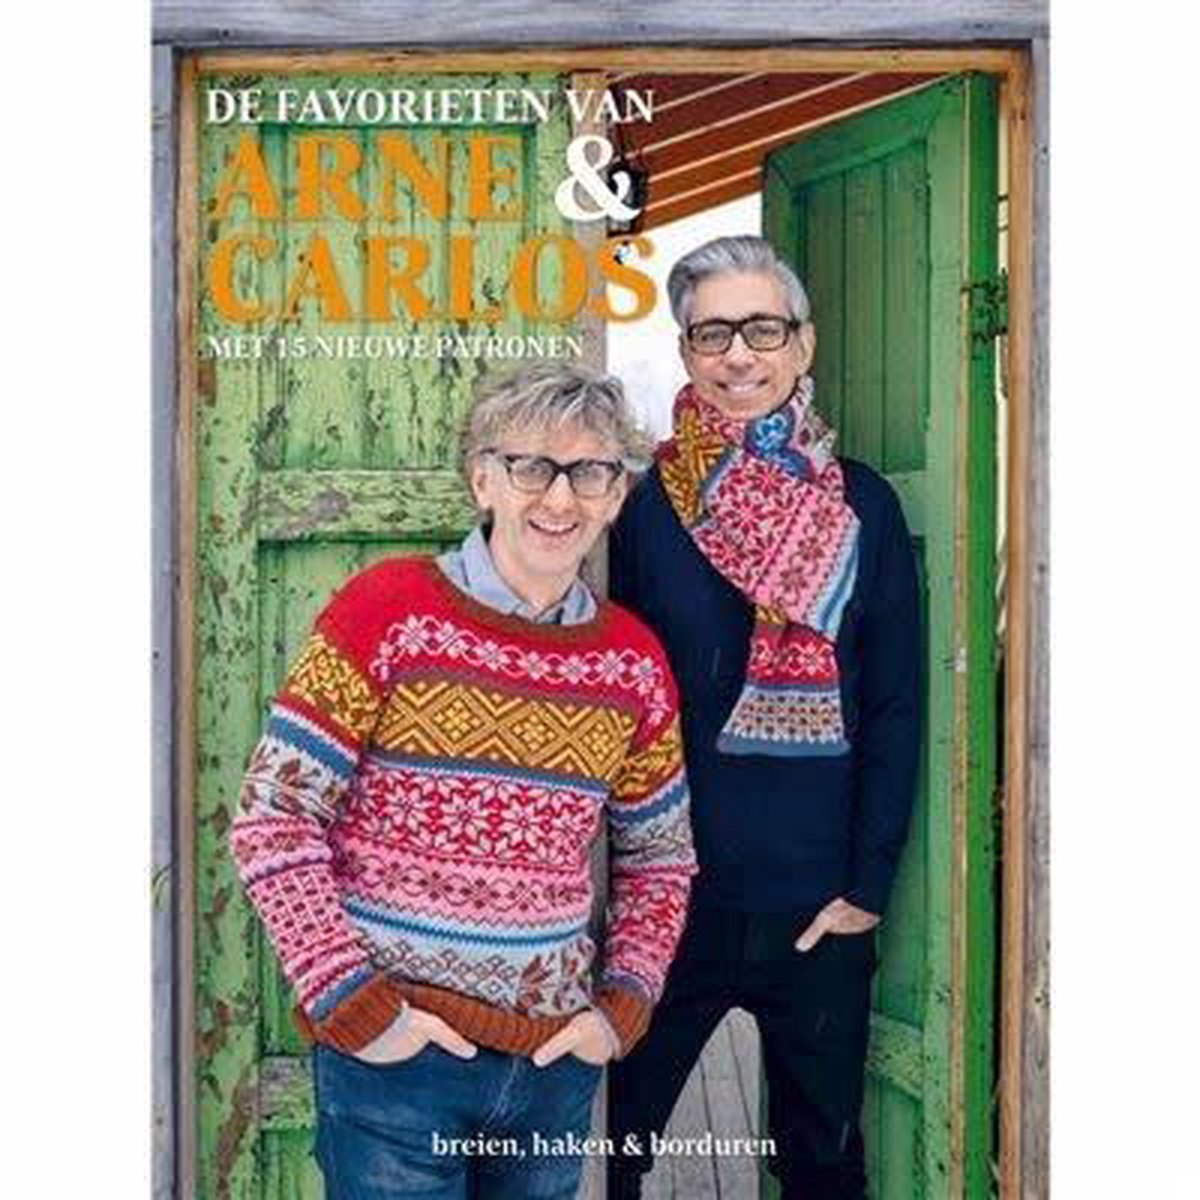 De favorieten van Arne & Carlos. Met 15 nieuwe patronen. Breien, haken &  borduren,... | bol.com